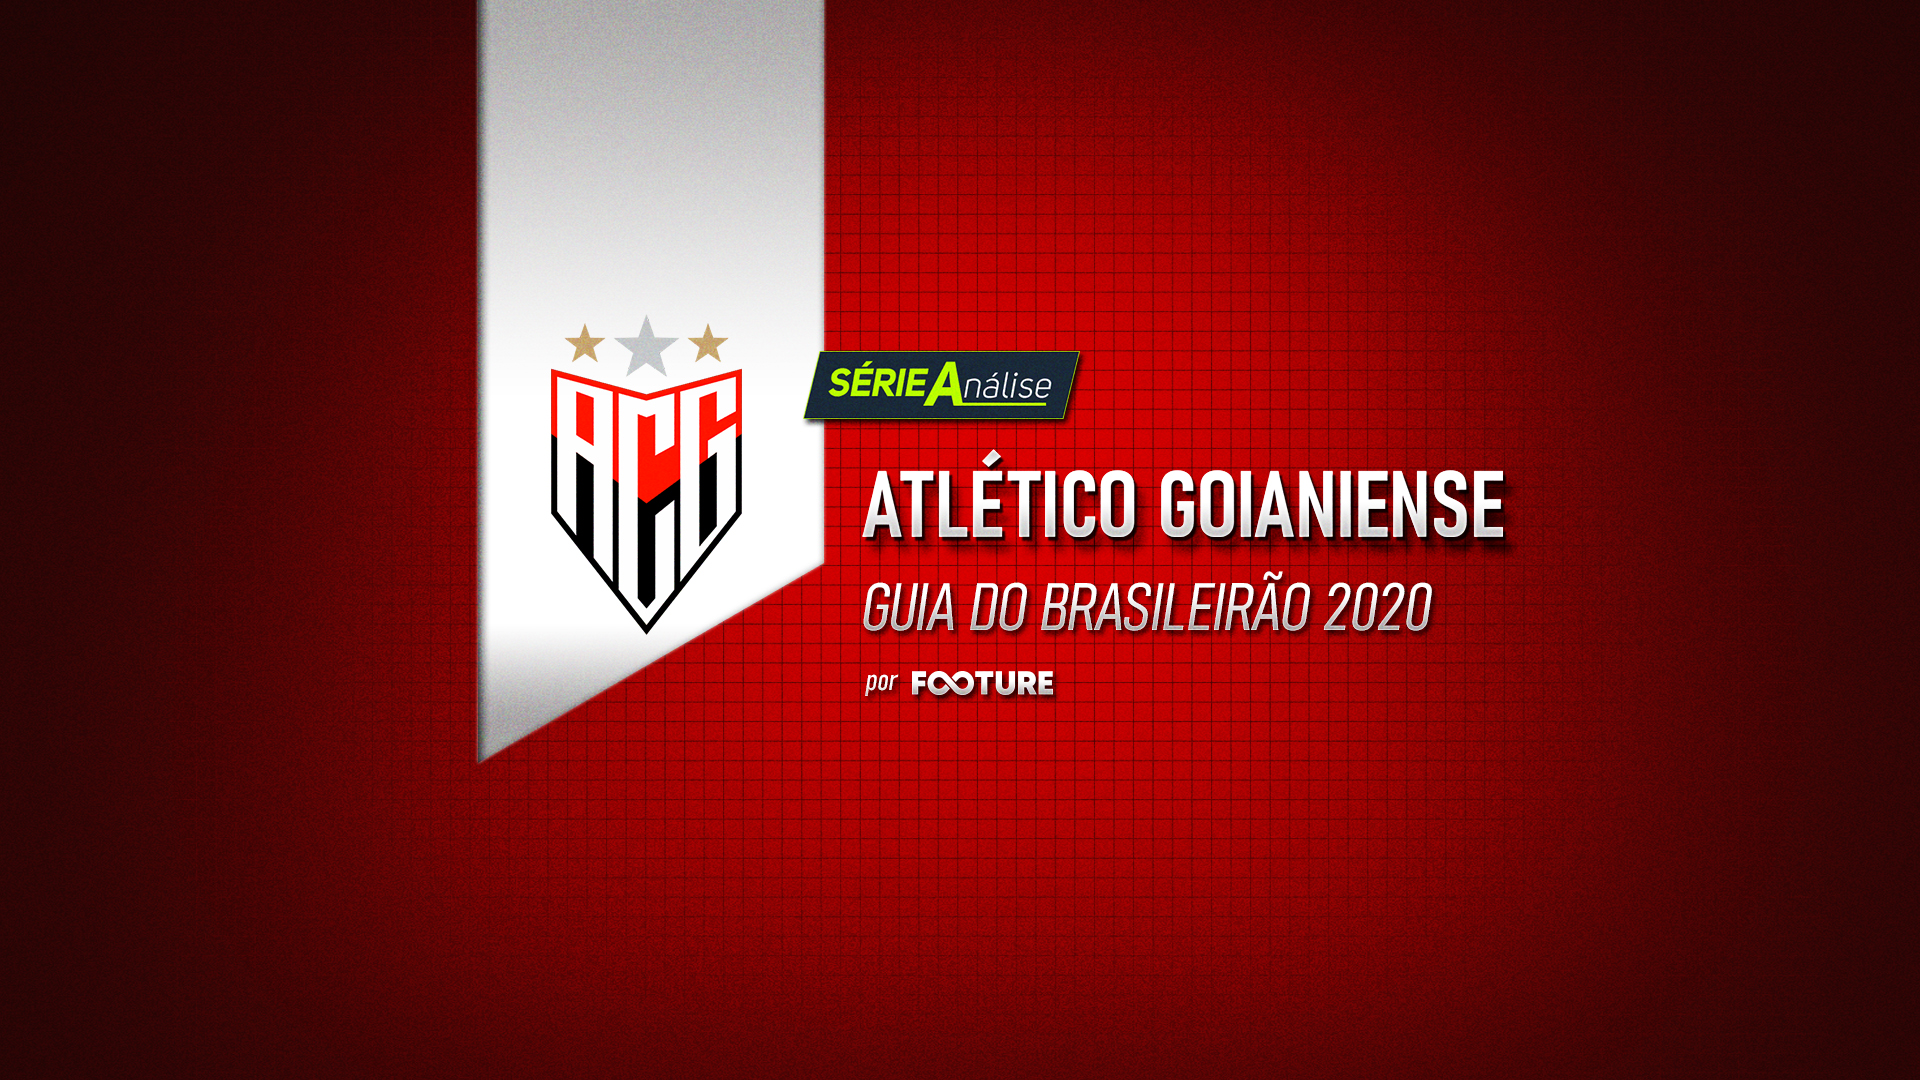 Guia do Brasileirão 2020 – Atlético Goianiense